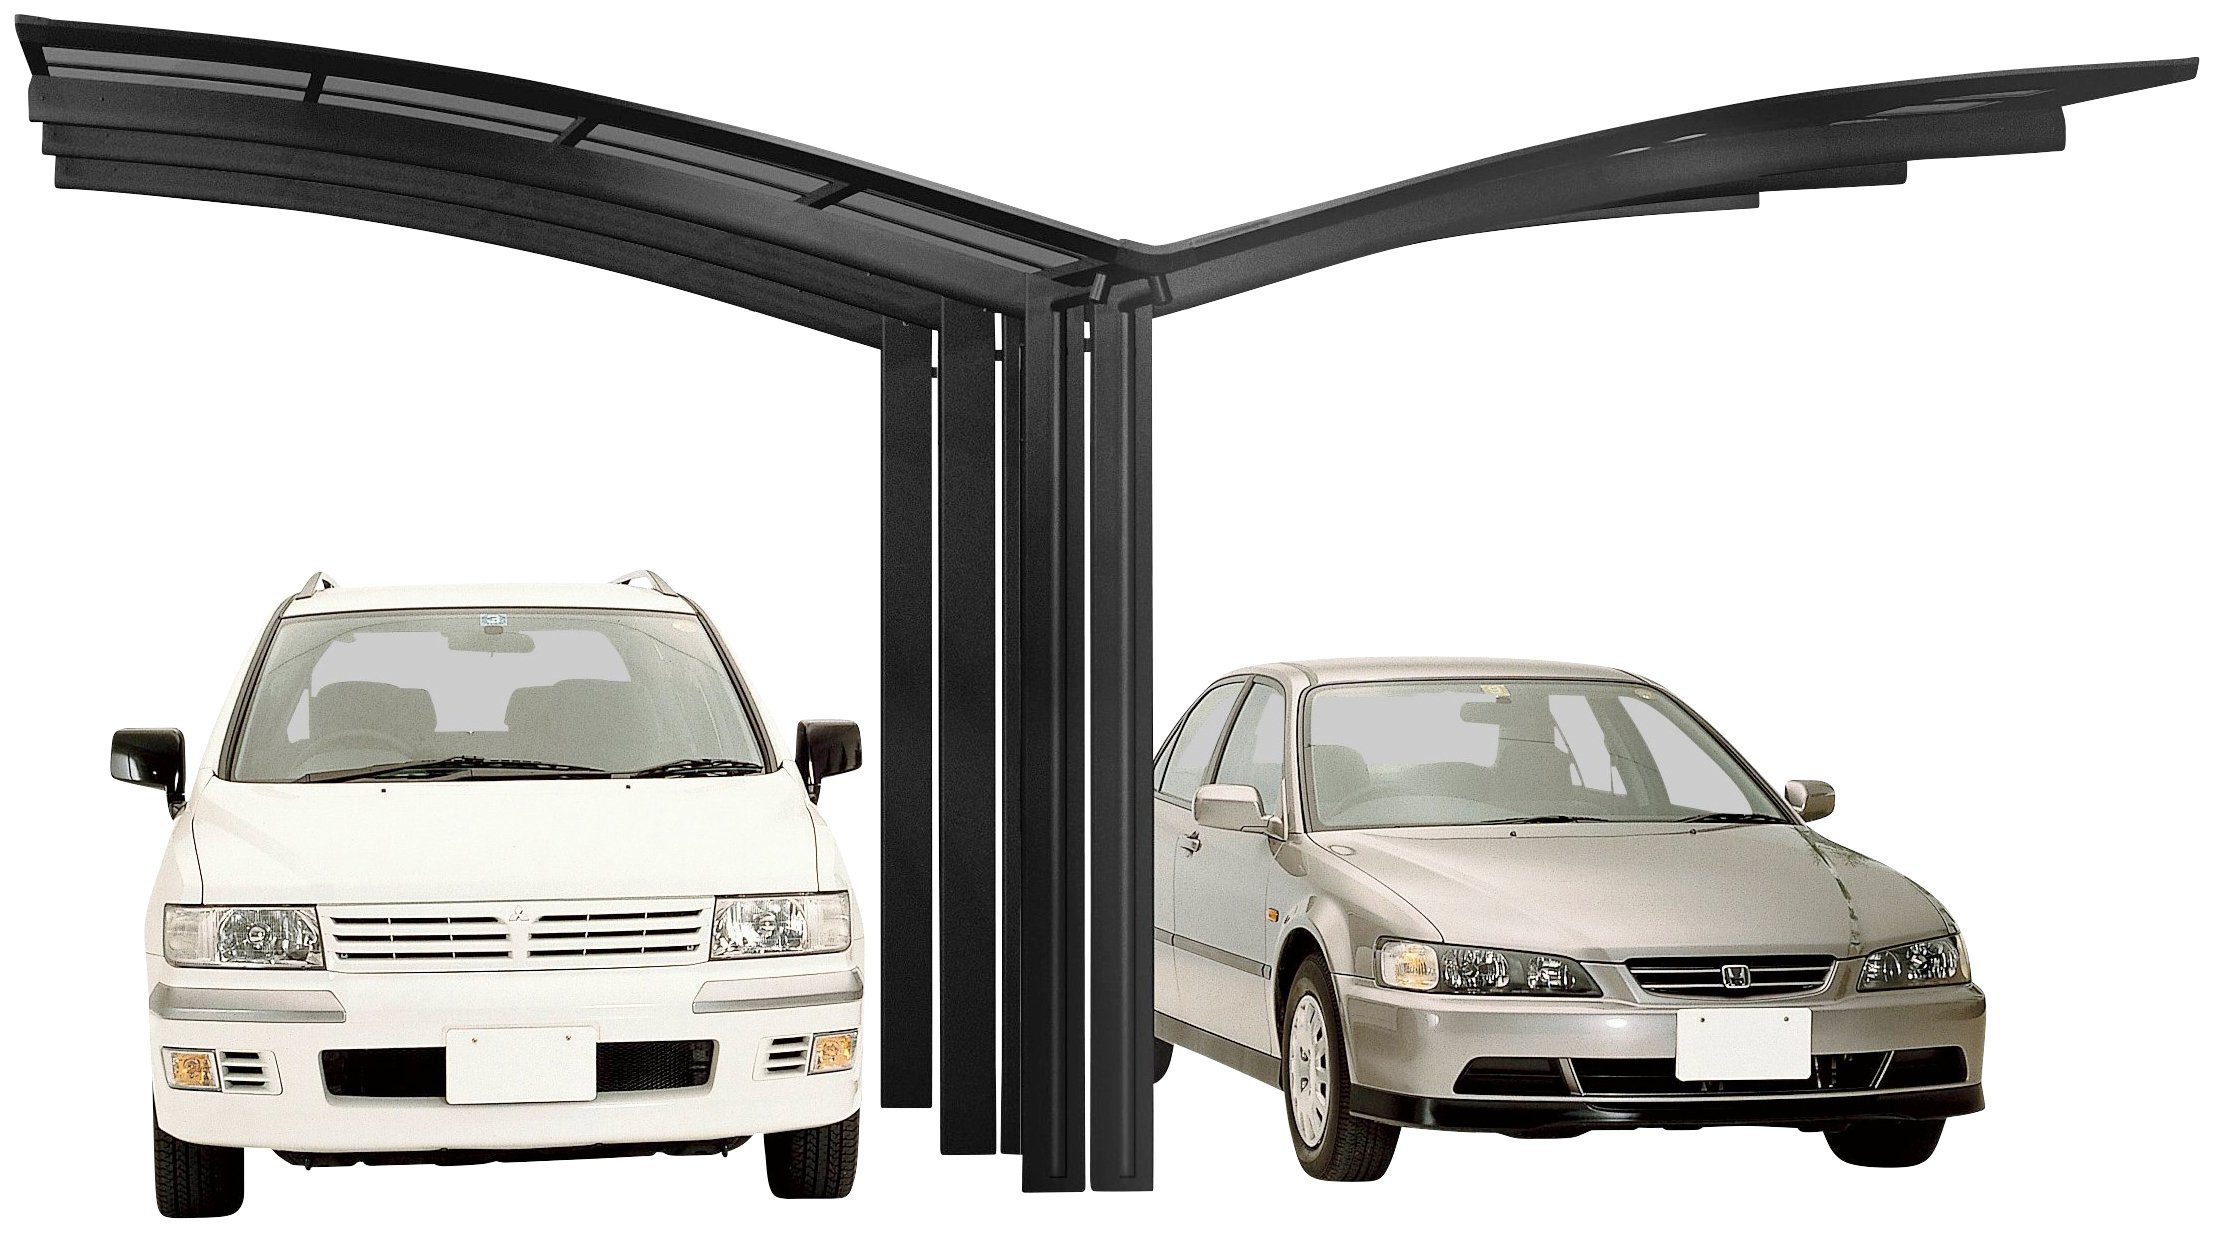 Ximax Doppelcarport Portoforte Typ 110 Y-schwarz, BxT: 543x495 cm, 240 cm Einfahrtshöhe, Aluminium